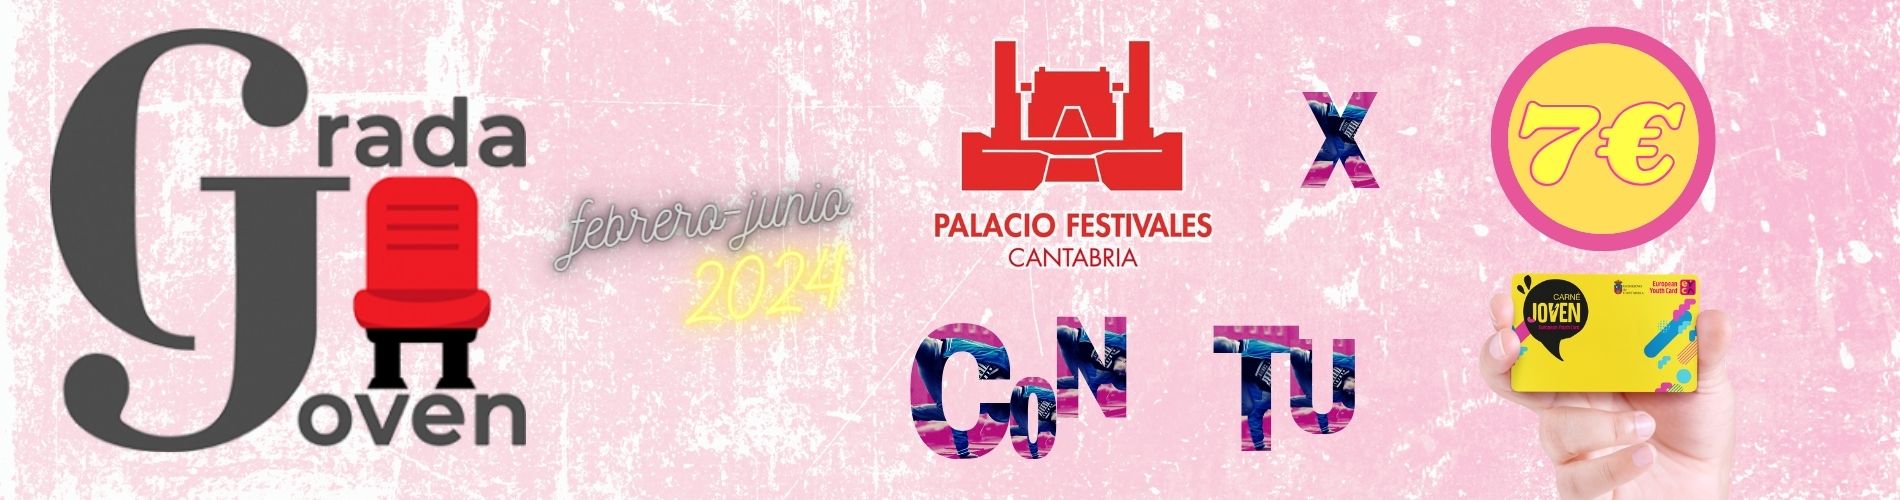 Grada Joven Palacio Festivales 7€